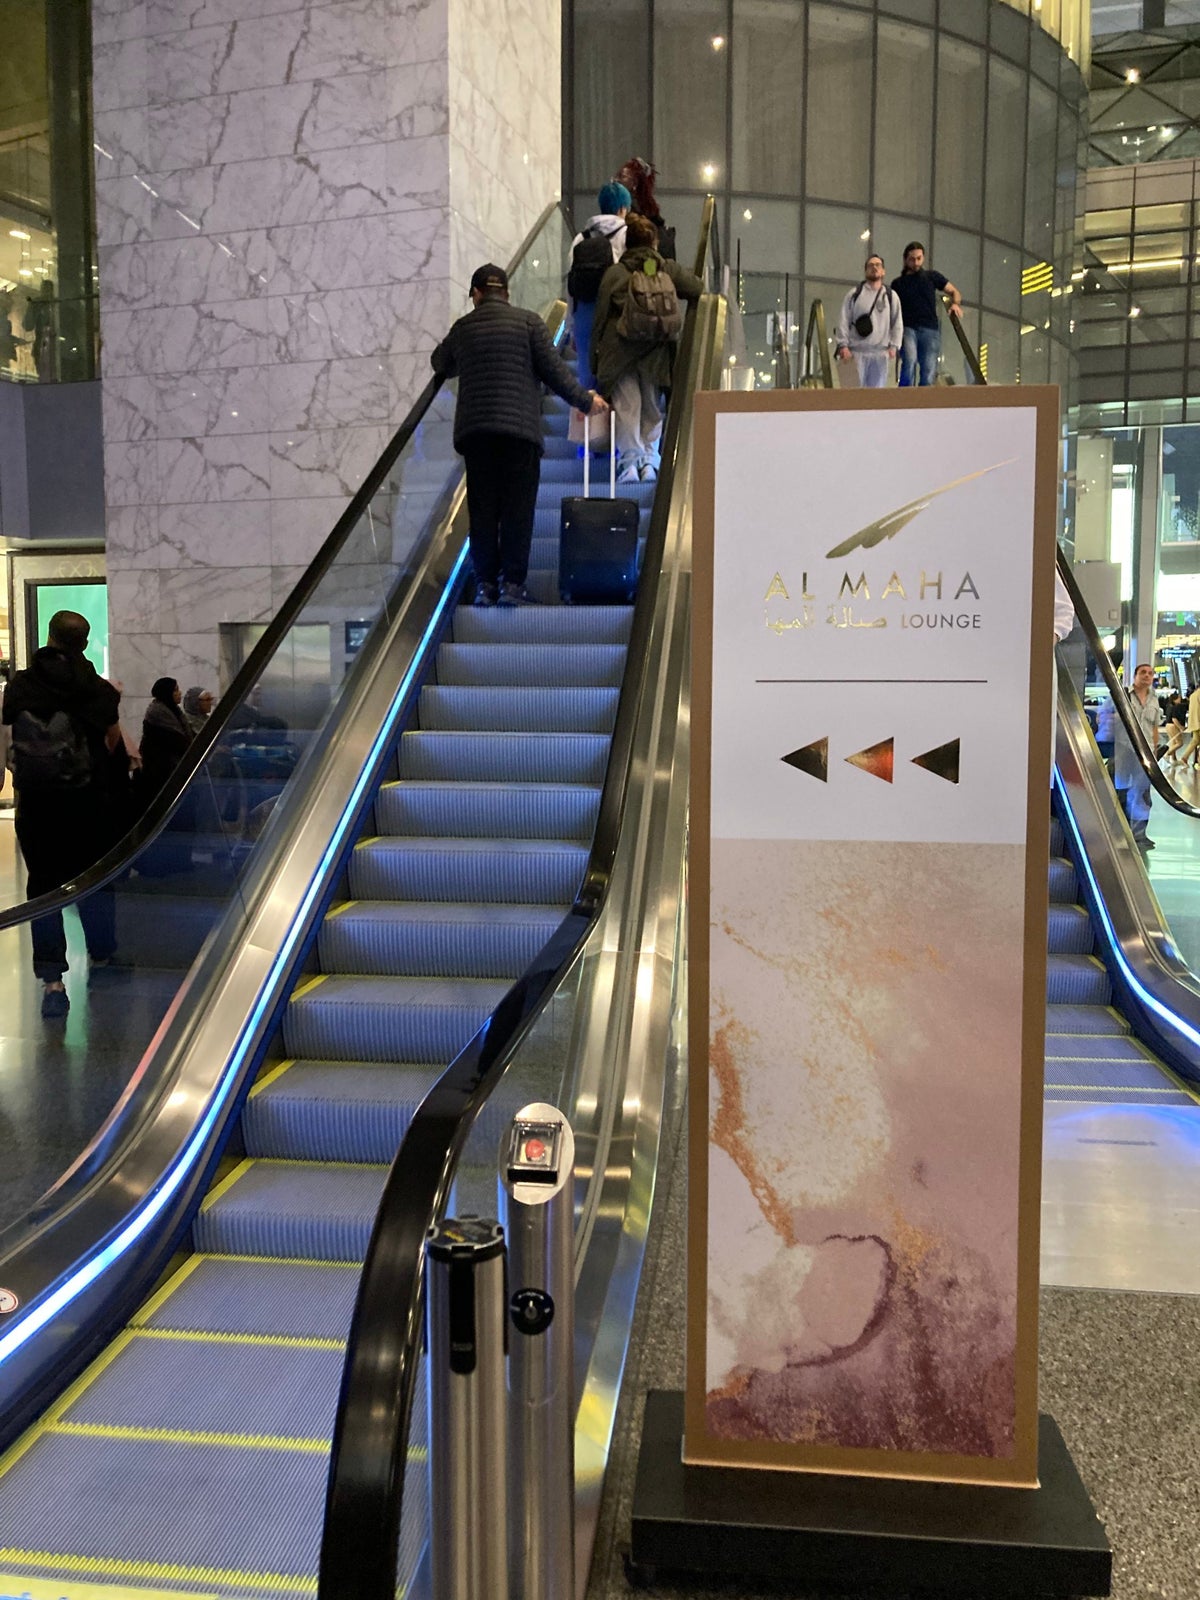 Al Maha Lounge Doha escalator entrance